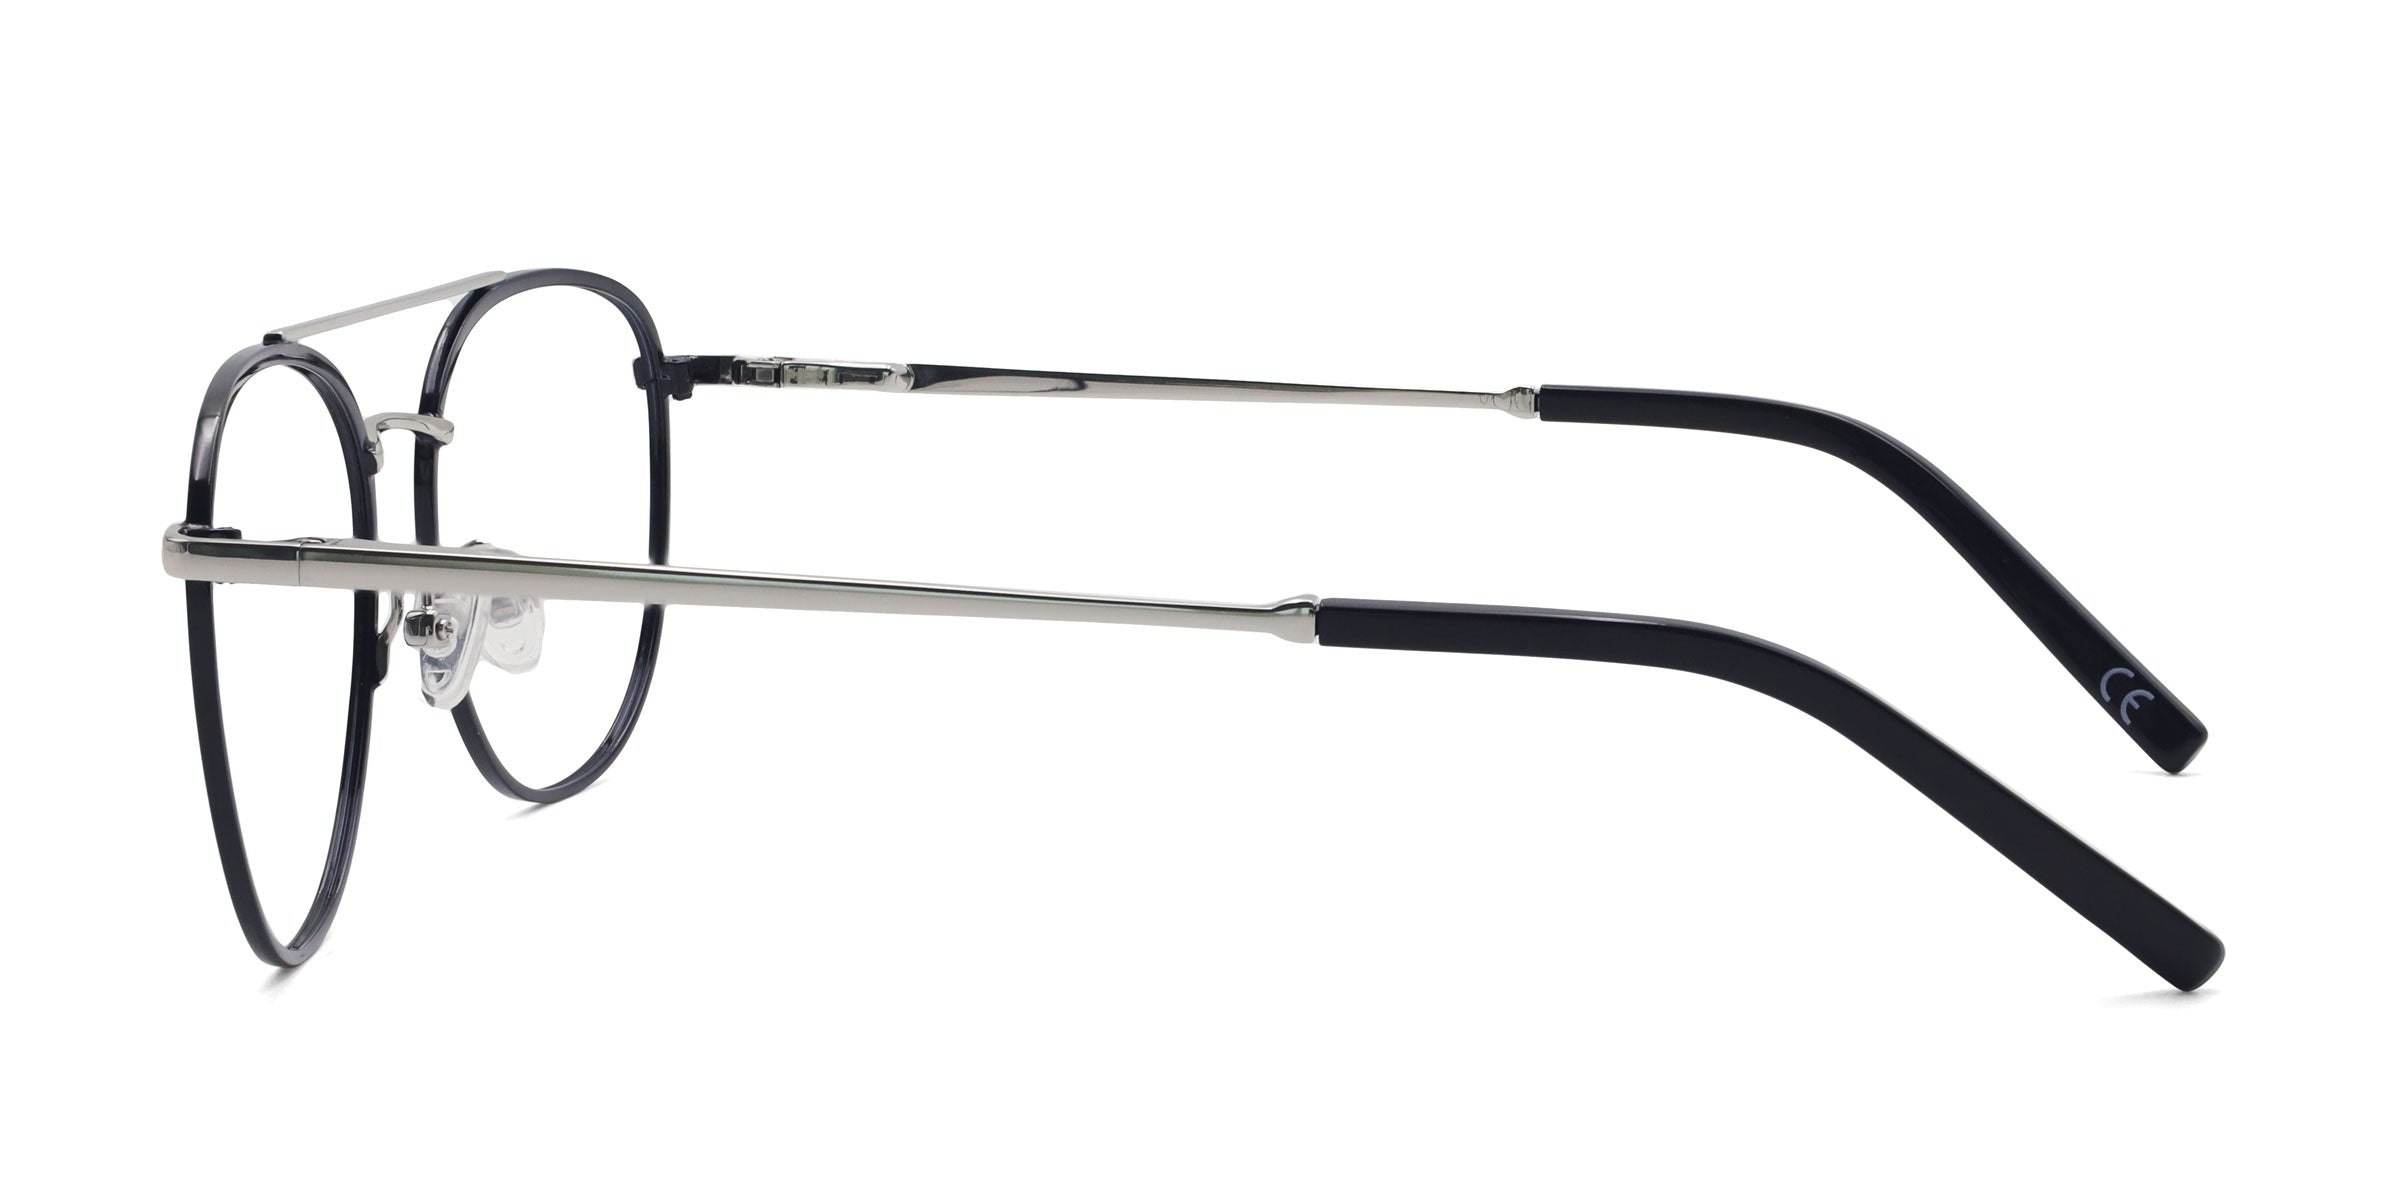 Kind Aviator Black eyeglasses frames side view